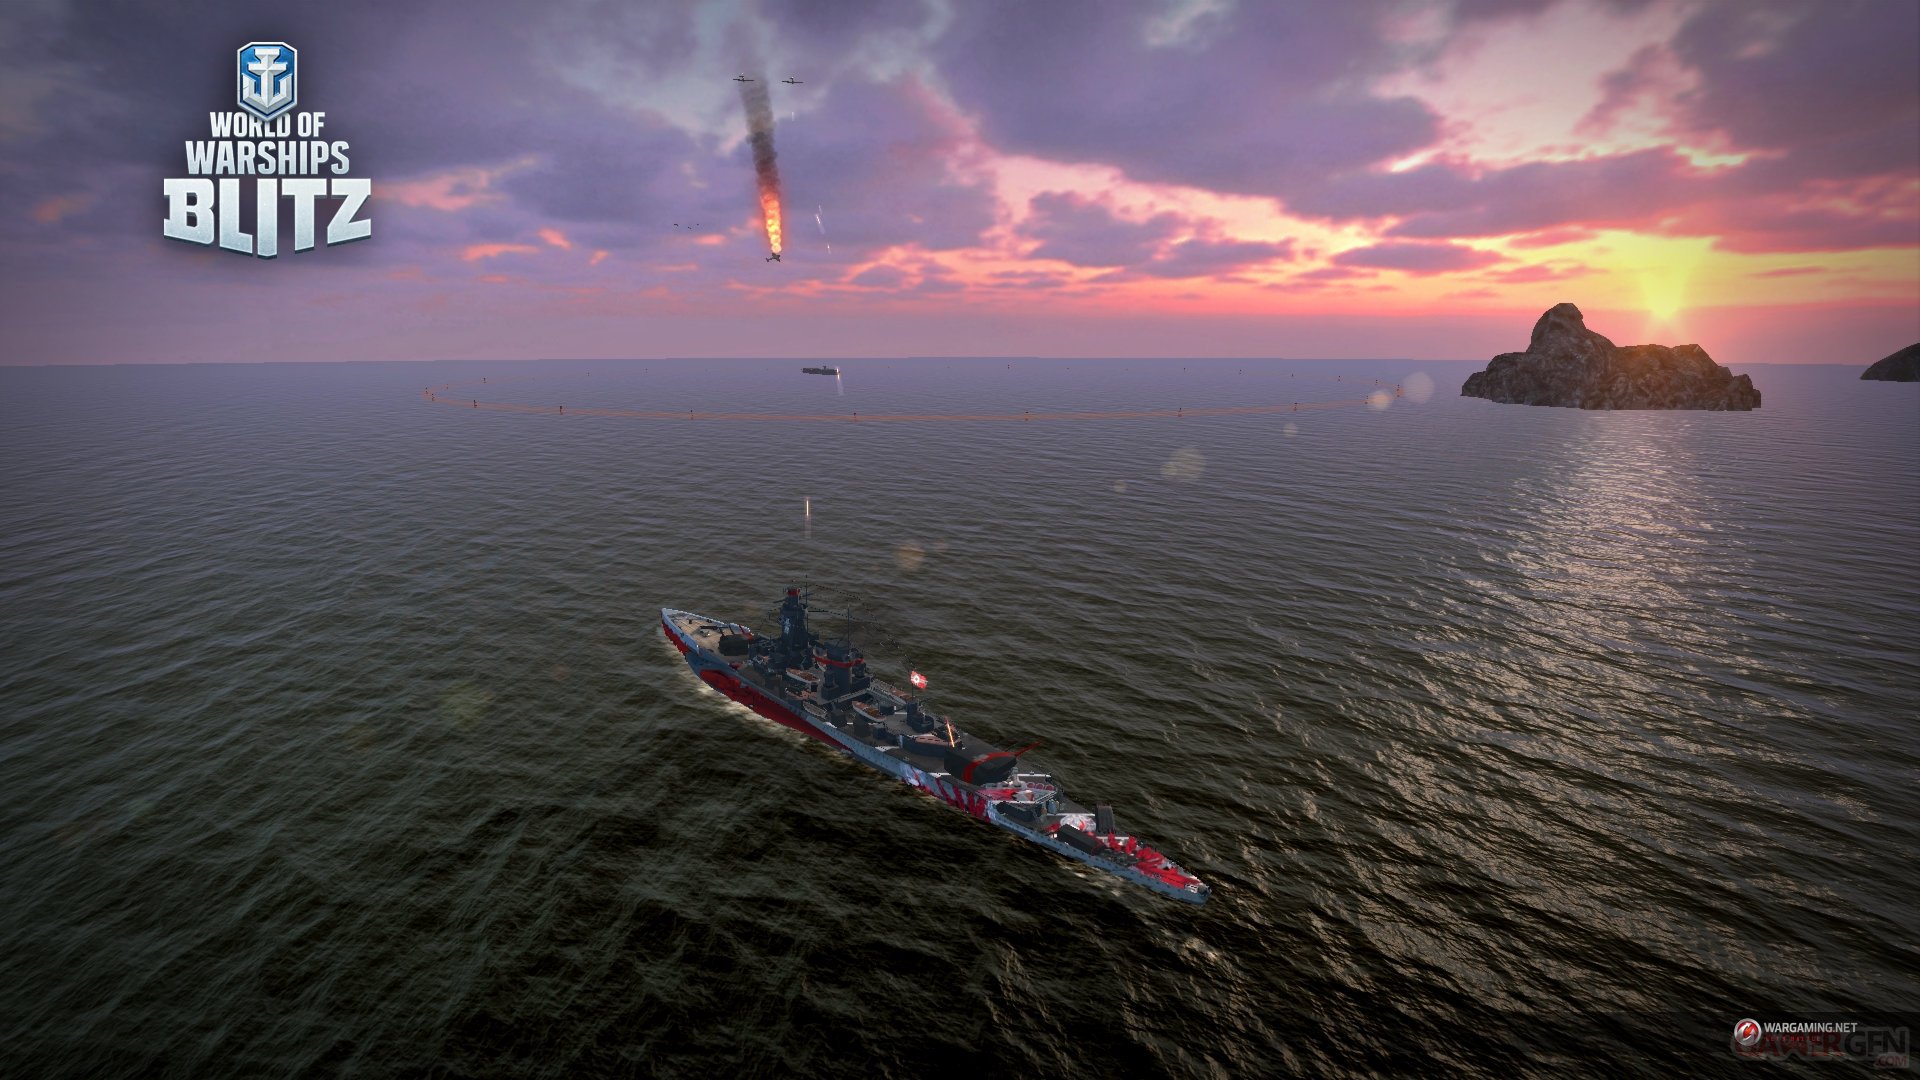 world of warships collab azur lane